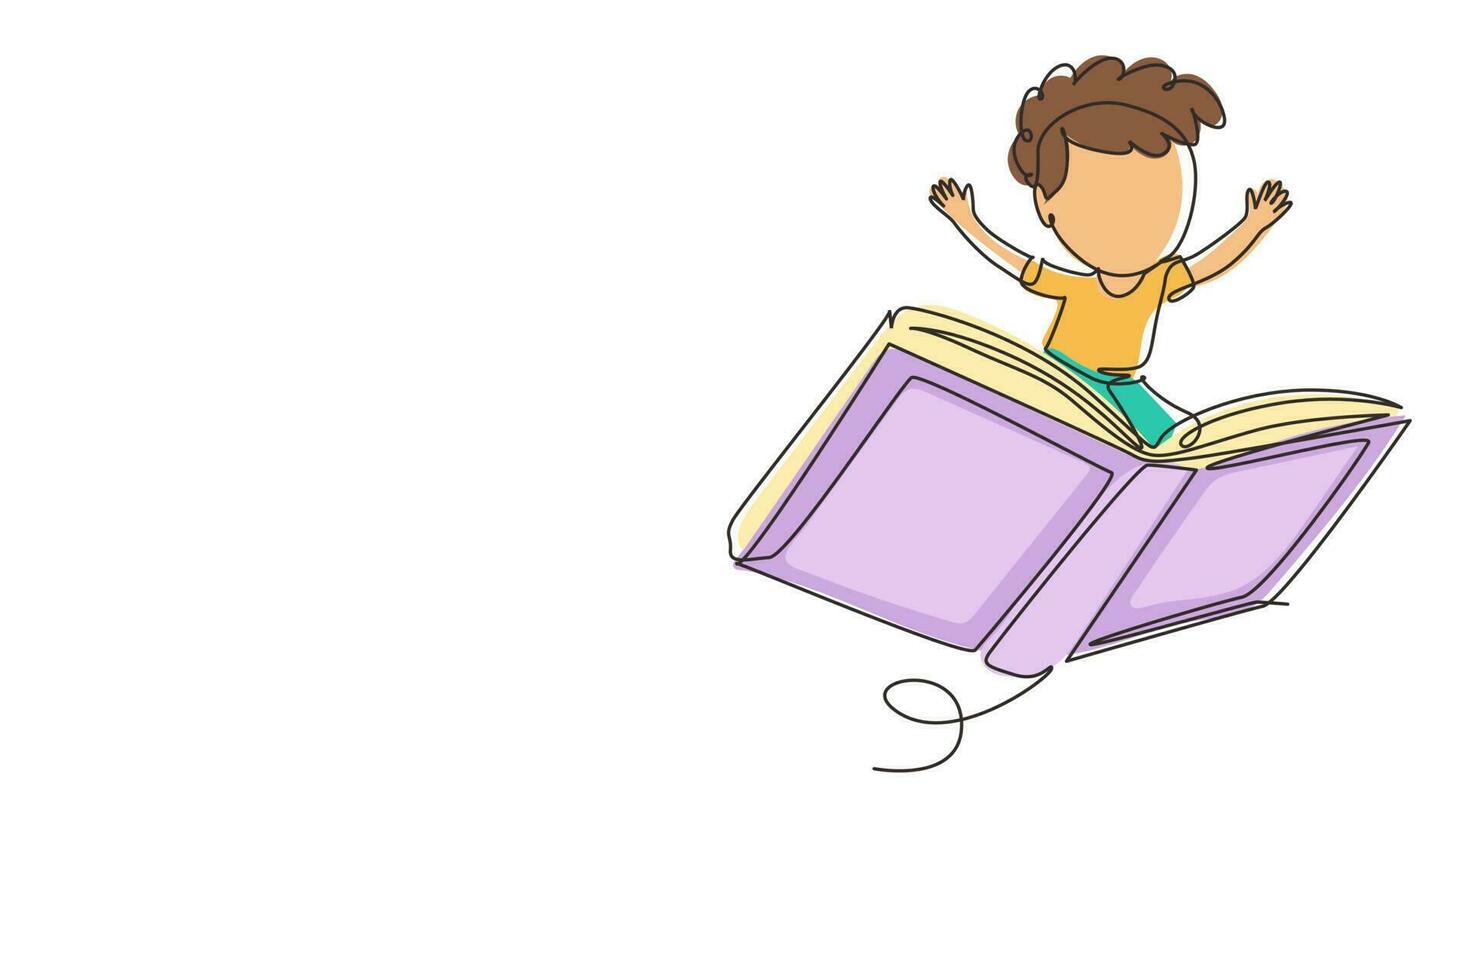 dibujo continuo de una línea feliz niño preescolar sonriente volando en un gran libro abierto. niños montando un libro volador mágico. concepto de poder del conocimiento. ilustración gráfica de vector de diseño de dibujo de una sola línea